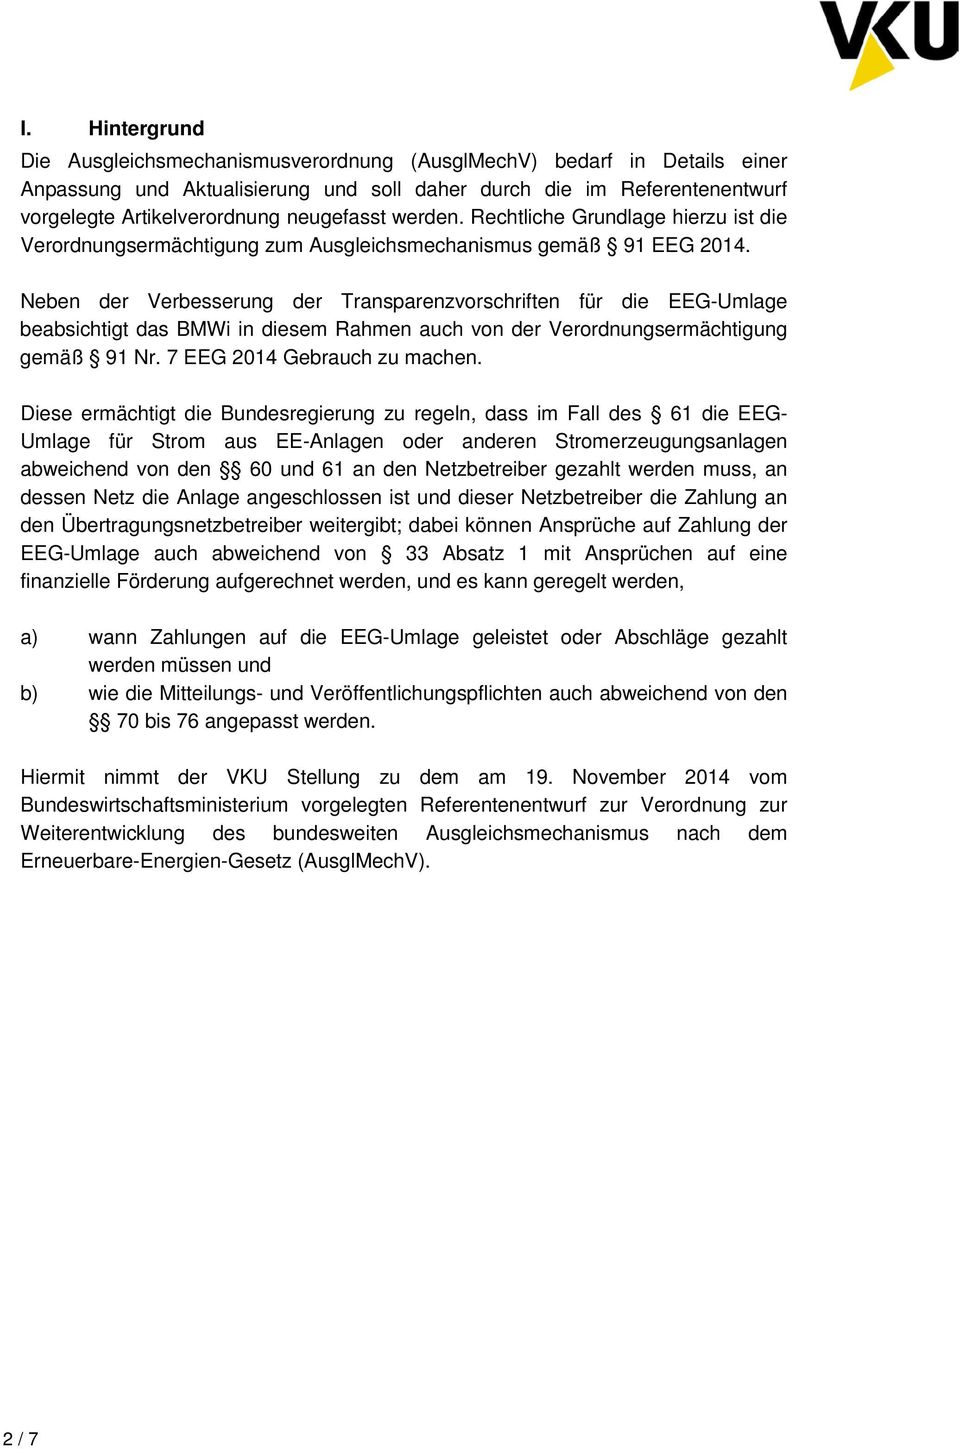 Neben der Verbesserung der Transparenzvorschriften für die EEG-Umlage beabsichtigt das BMWi in diesem Rahmen auch von der Verordnungsermächtigung gemäß 91 Nr. 7 EEG 2014 Gebrauch zu machen.